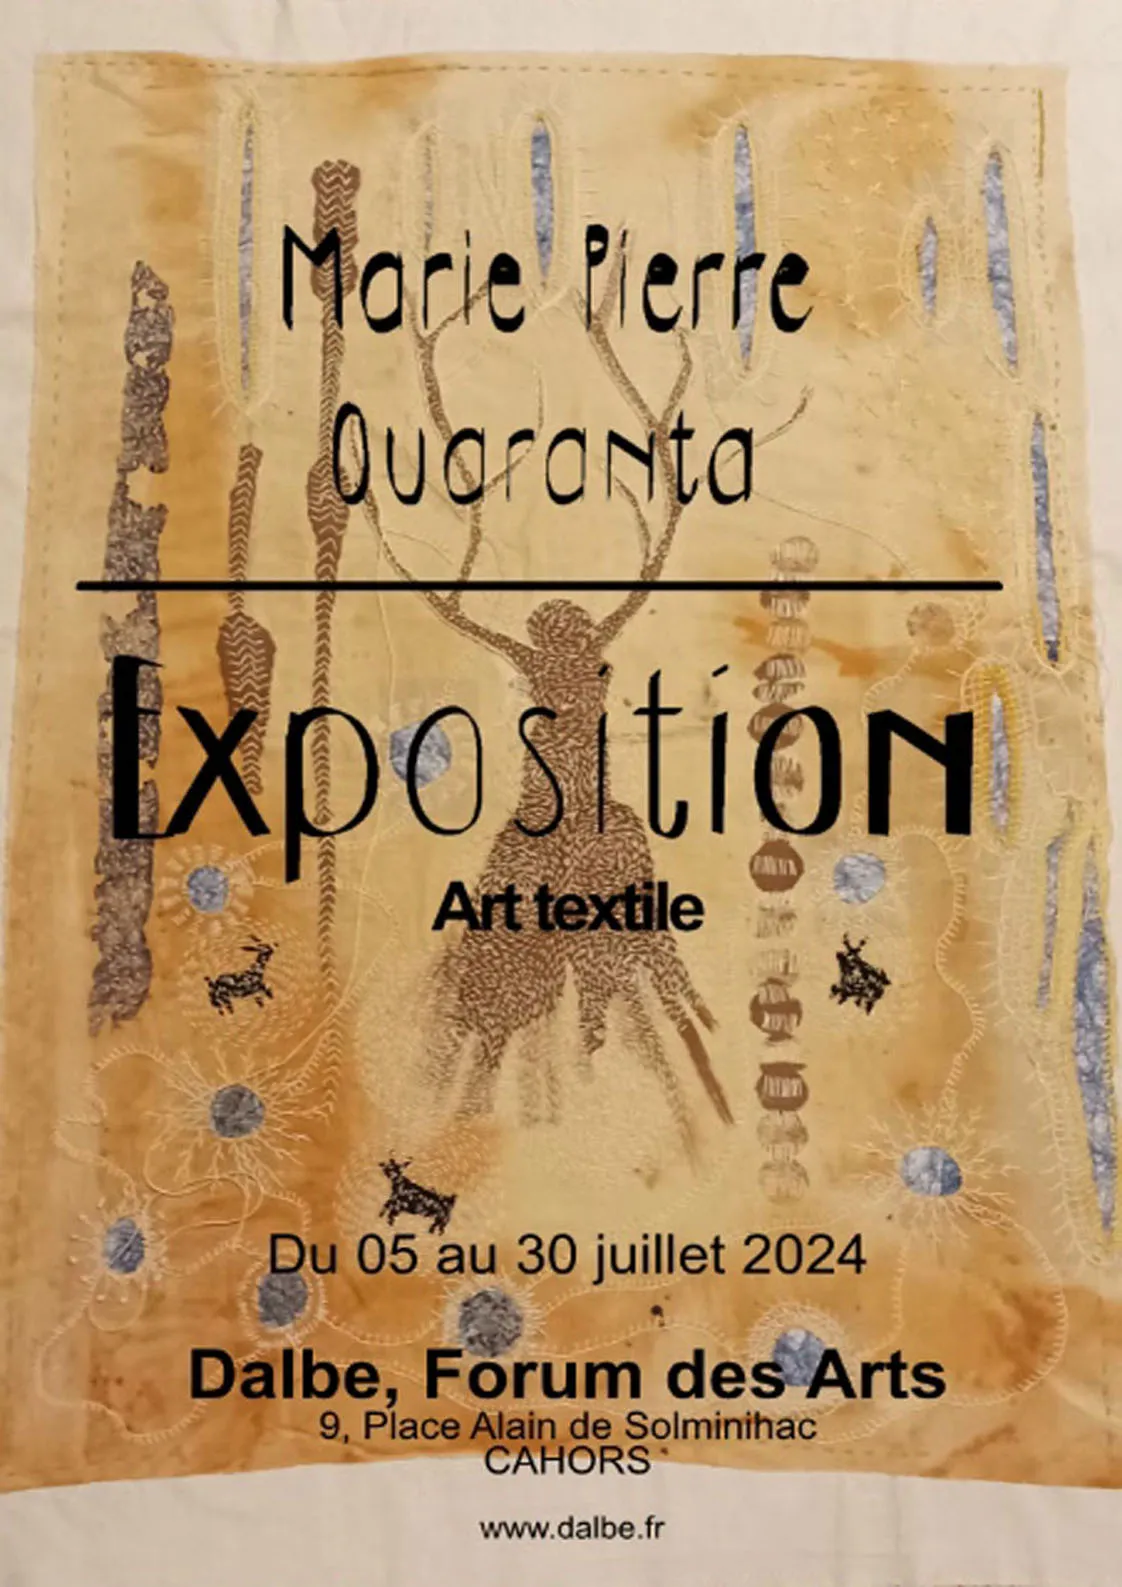 Image qui illustre: Exposition Art Textile, Marie Pierre Quaranta à Cahors - 0